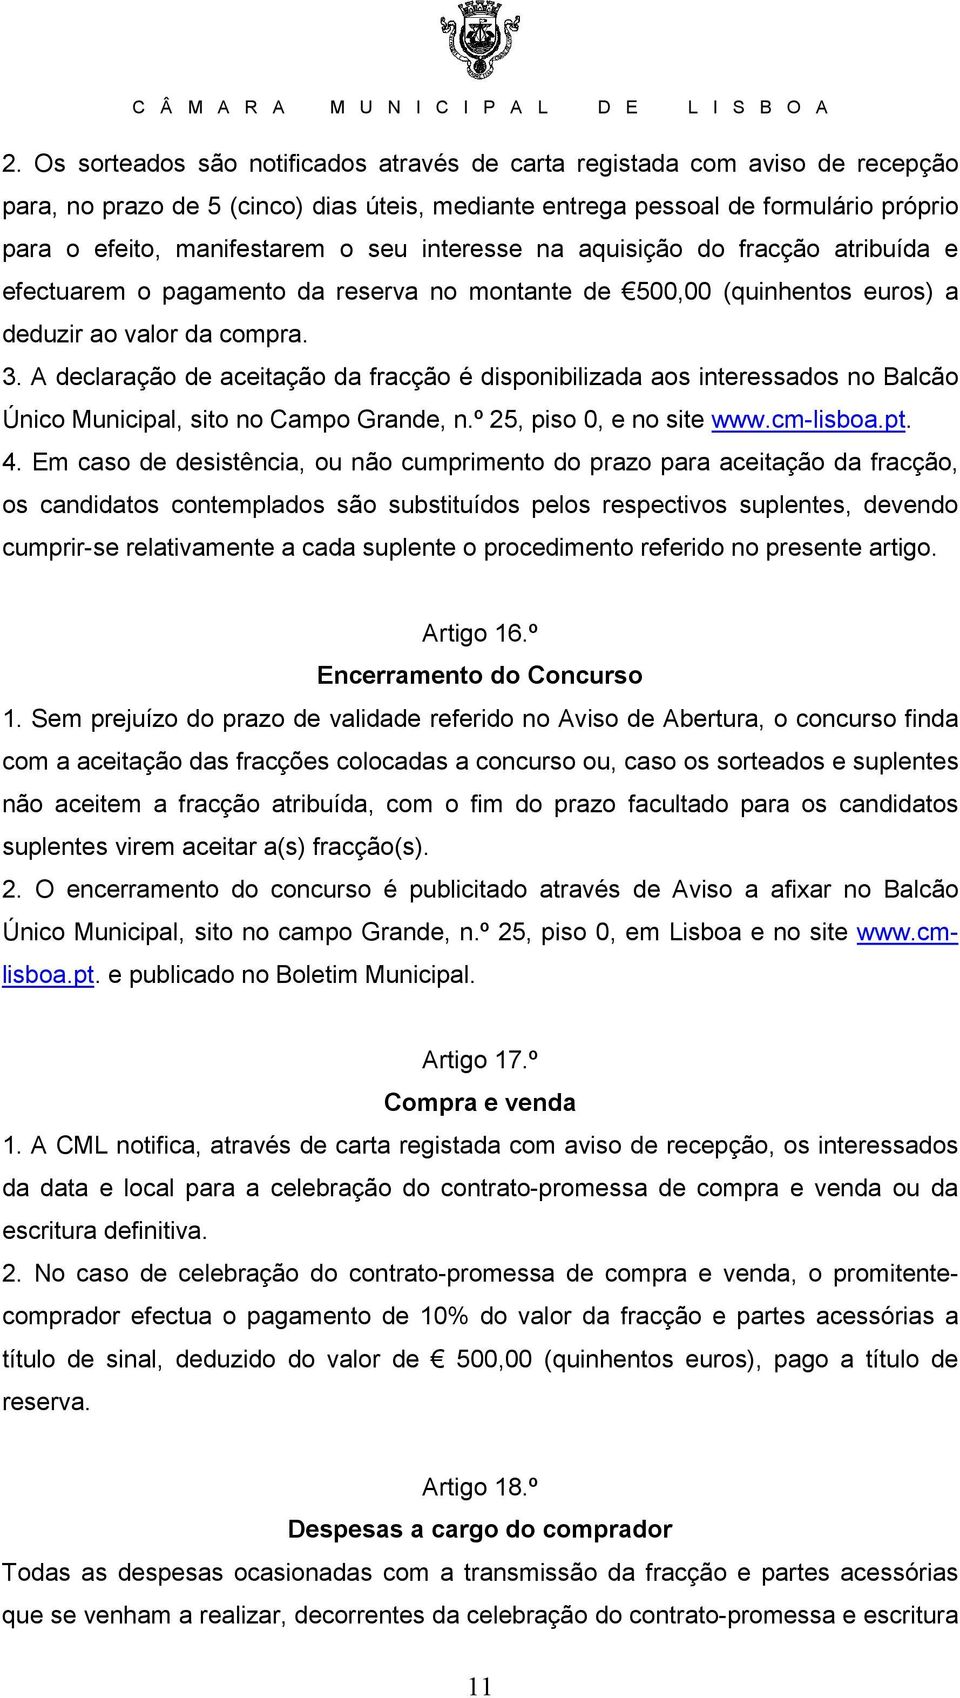 A declaração de aceitação da fracção é disponibilizada aos interessados no Balcão Único Municipal, sito no Campo Grande, n.º 25, piso 0, e no site www.cm-lisboa.pt. 4.